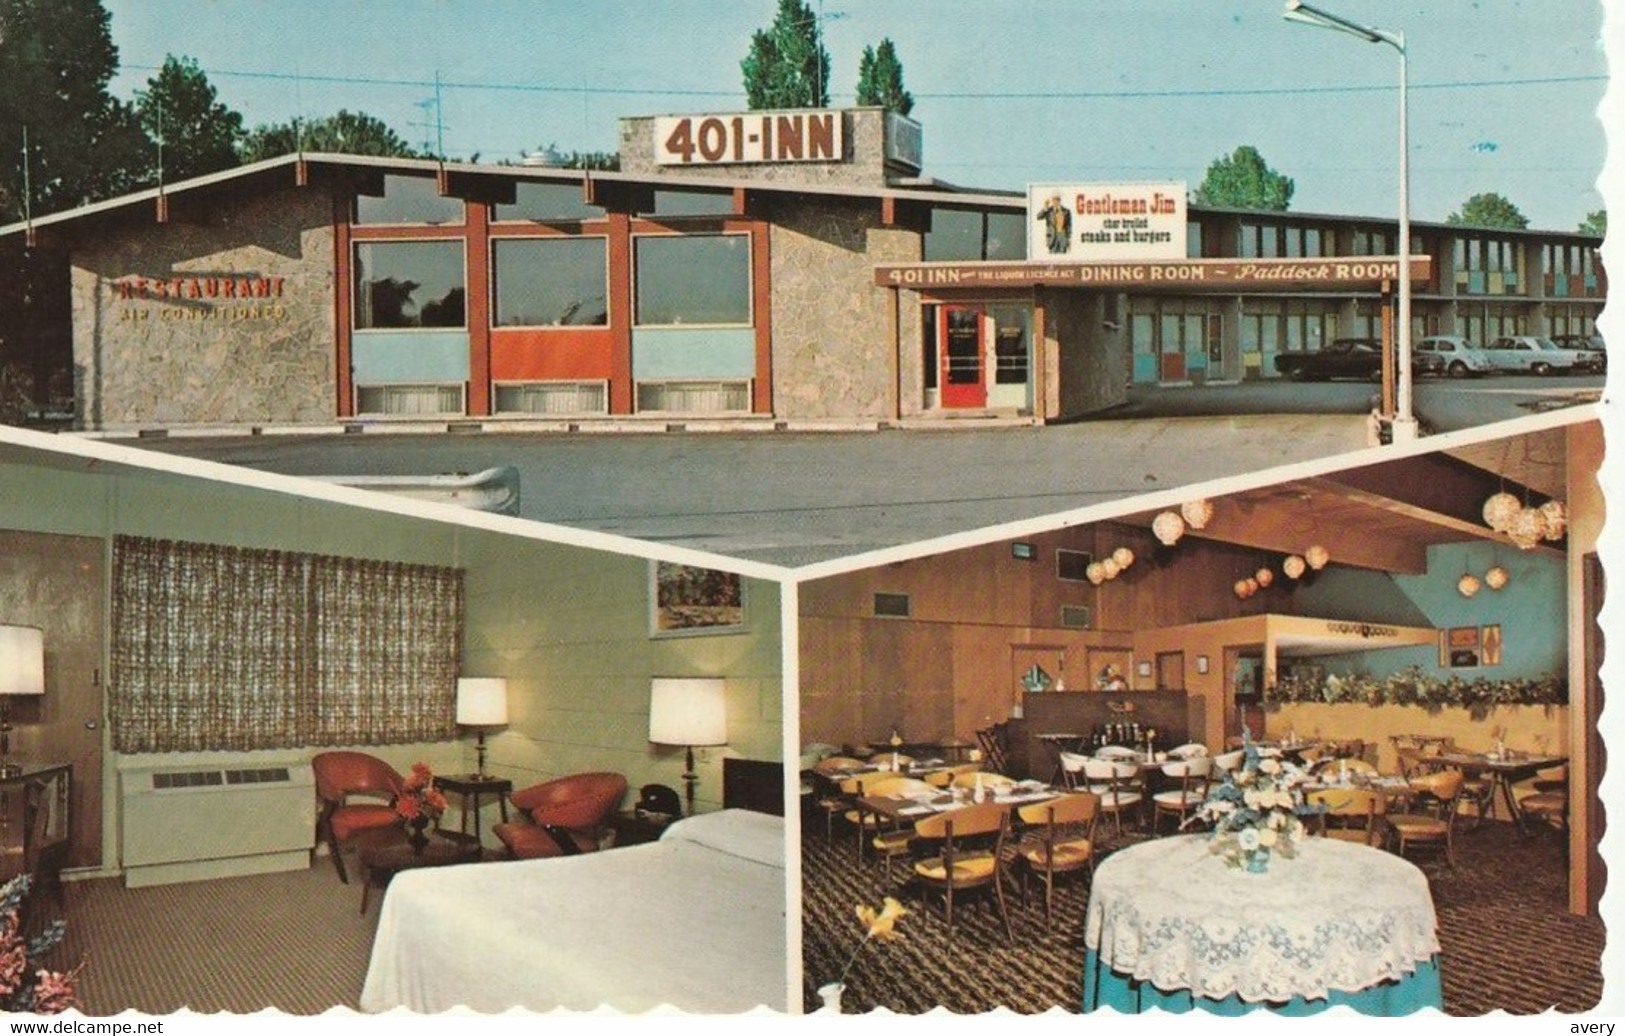 The 401 Inns Of Canada, Brockville, Ontario - Brockville